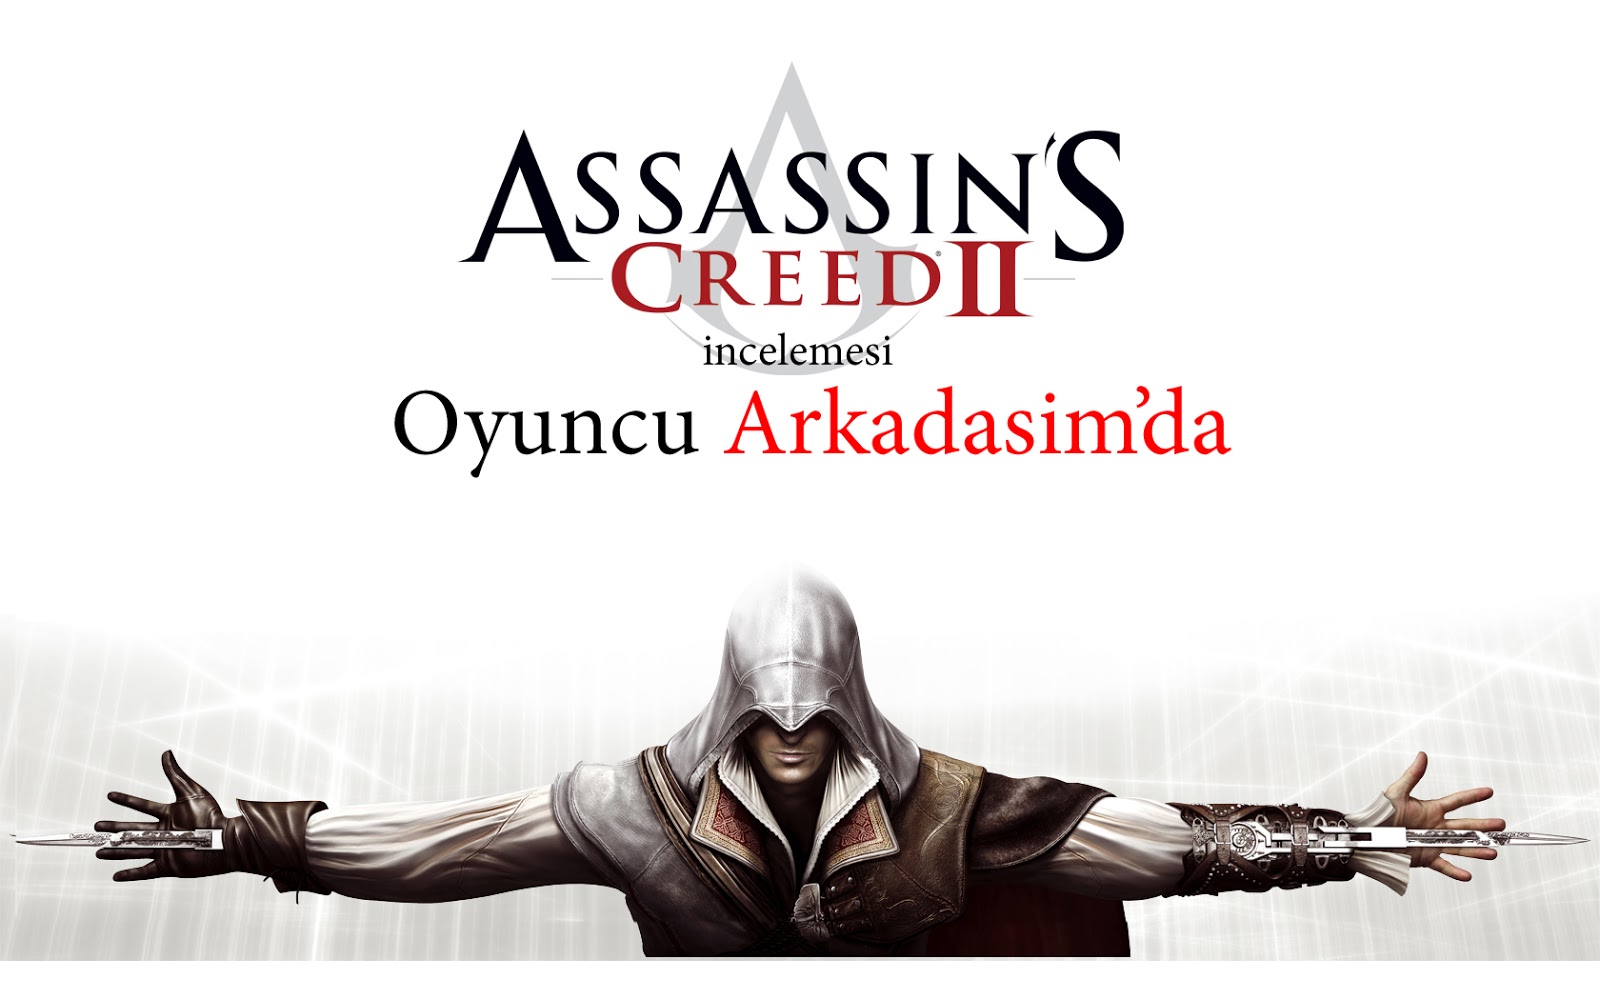 Как запустить ассасин крид. Assassins Creed 2 статуэтки. Ассасин Крид 2 плакат розыска. Исторические личности в Assassins Creed. Assassins Creed II управление.